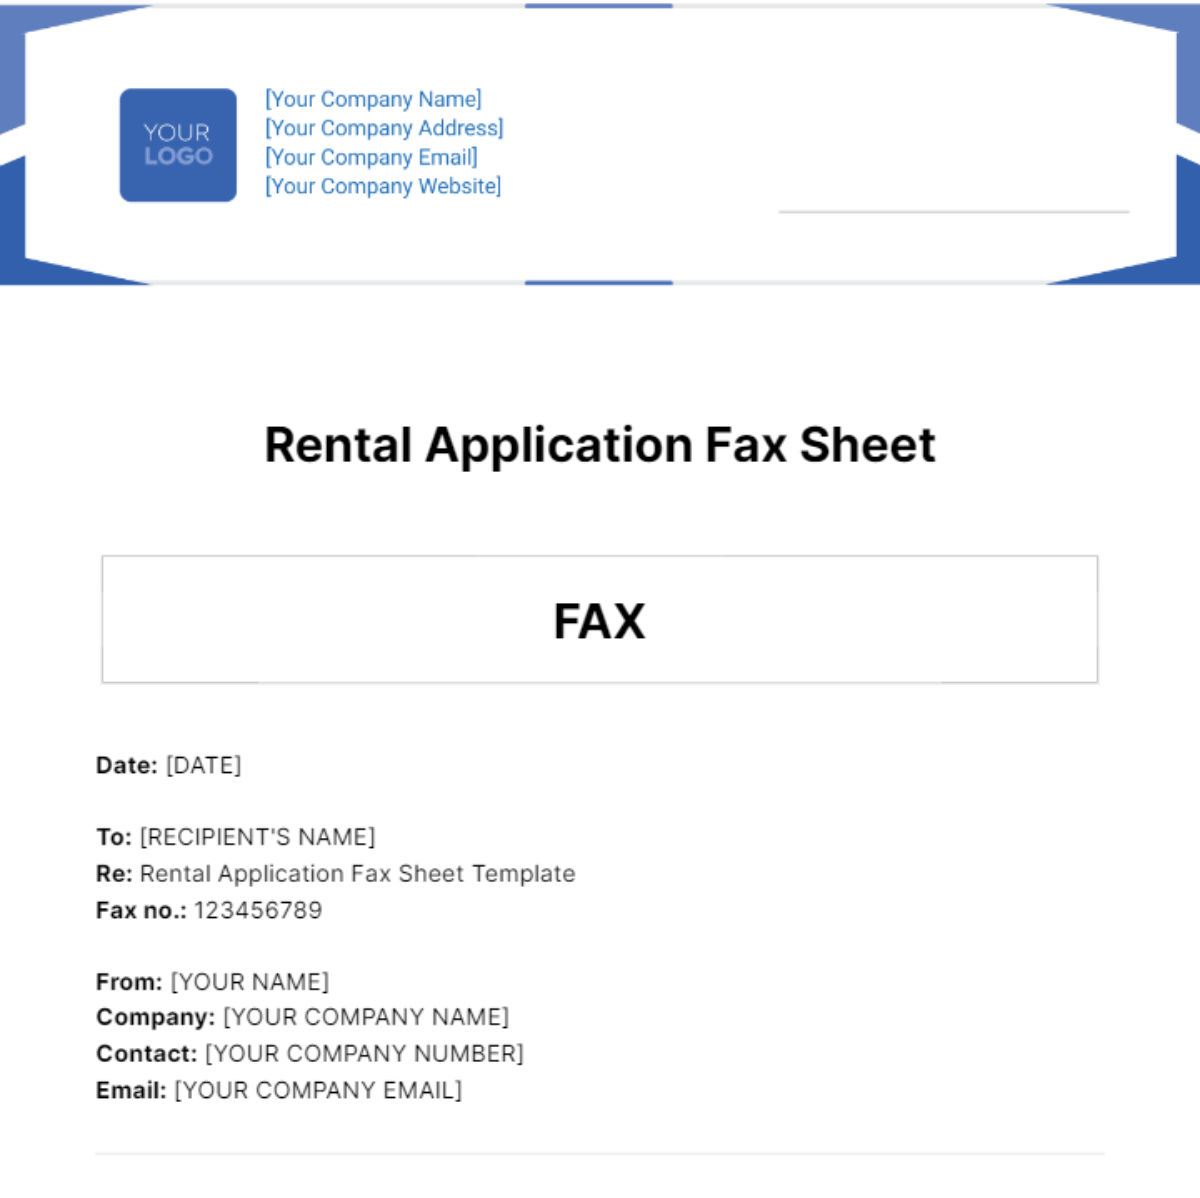 Rental Application Fax Sheet Template